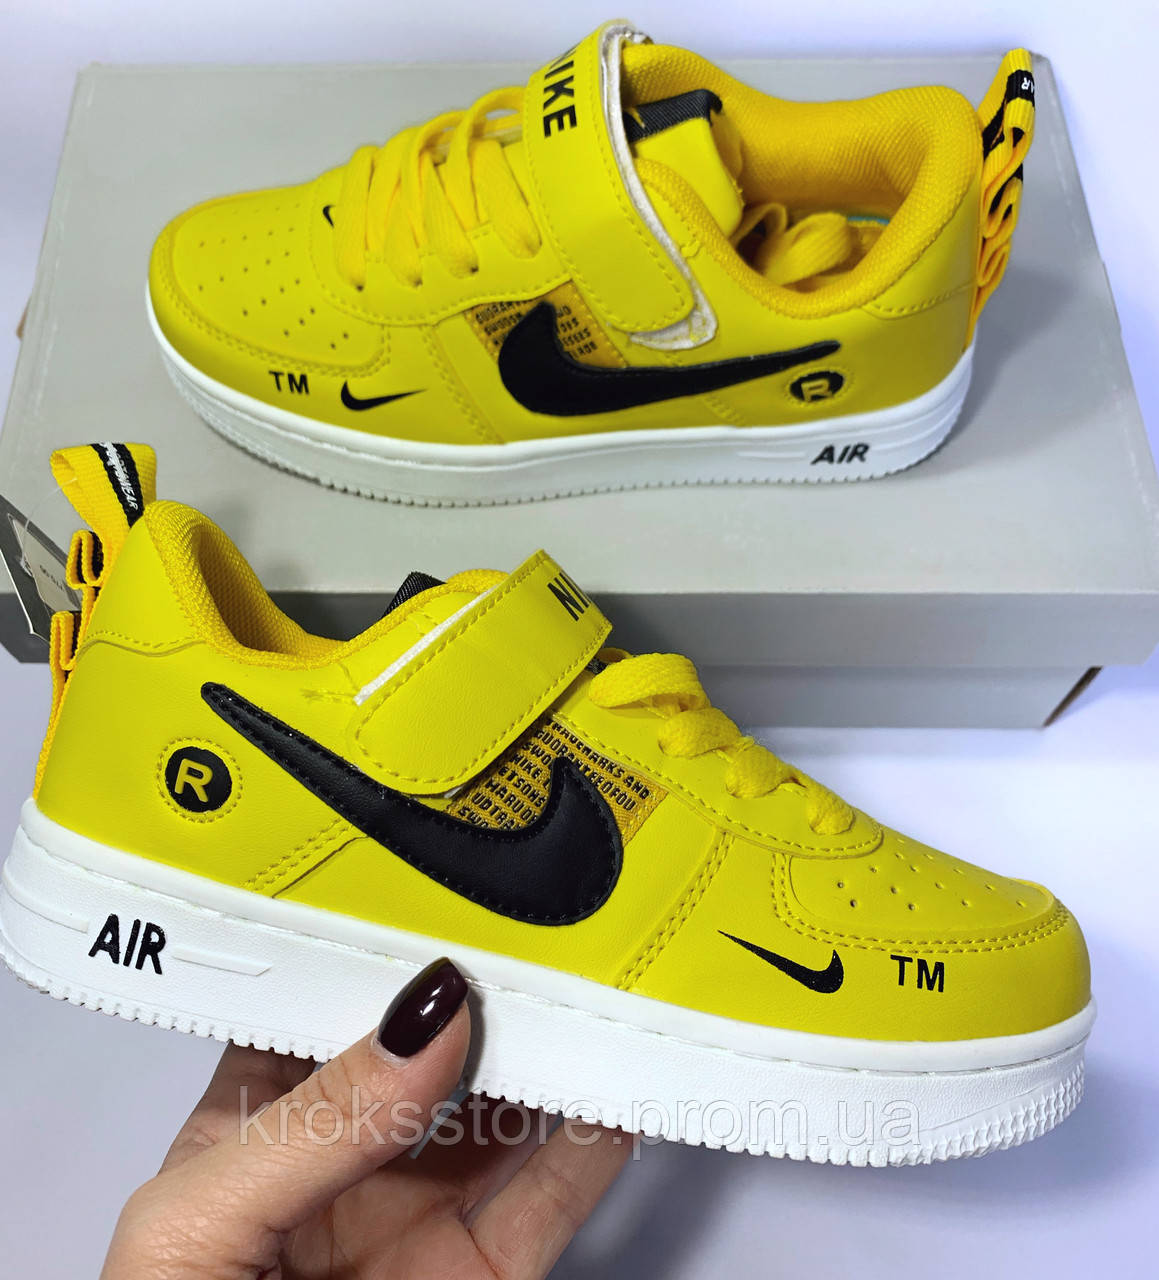 

Кроссовки детские Nike Air Force 1 Yellow размеры 27,28,29,30,31,32 19.5